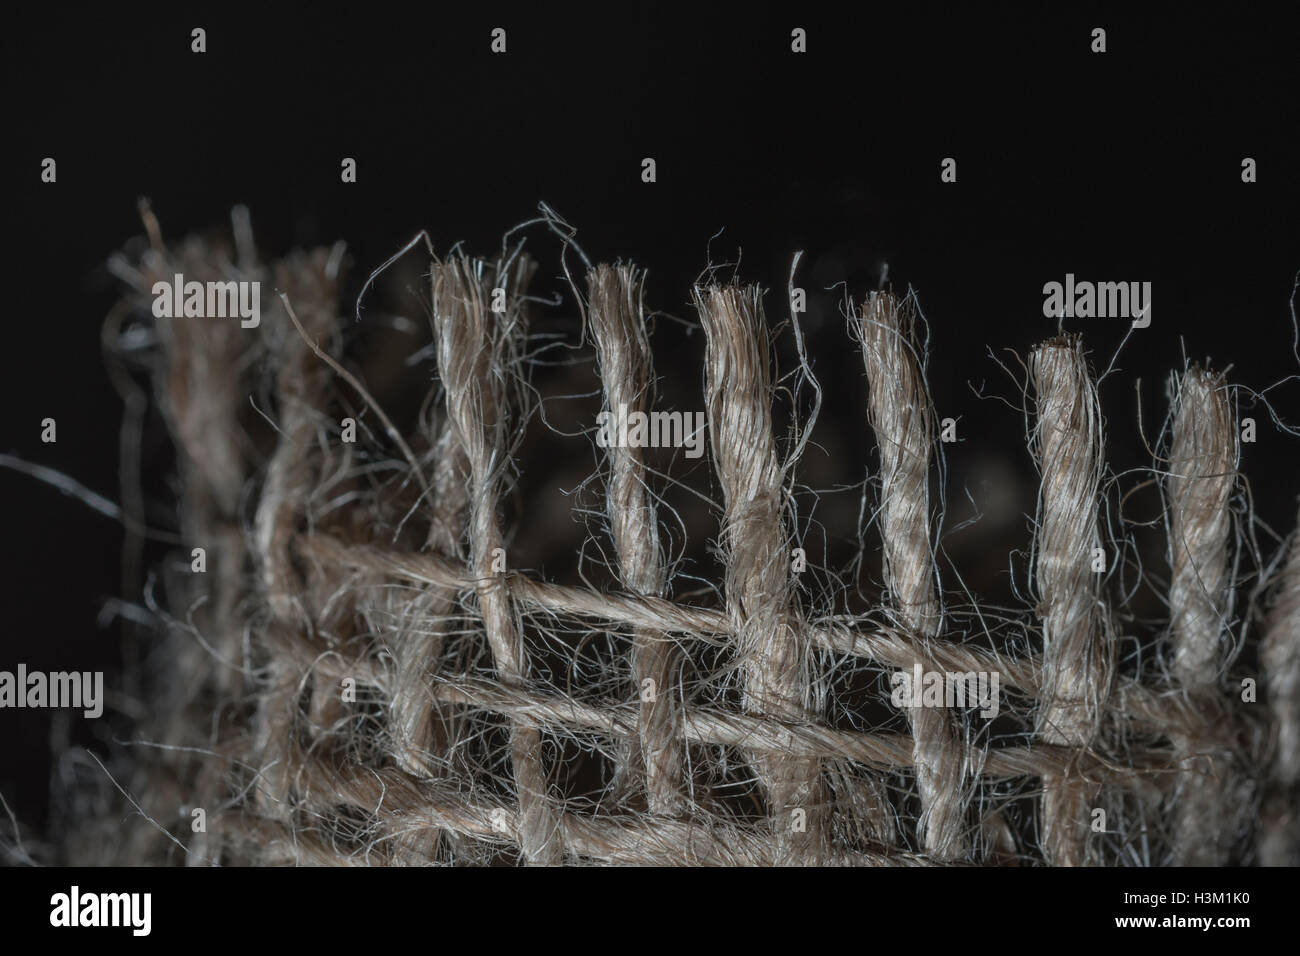 Makro-Foto Der ausgefranste Kanten der natürlichen Faser, Jute-sackleinen sacking Material Detail der feinen Fäden. Stockfoto